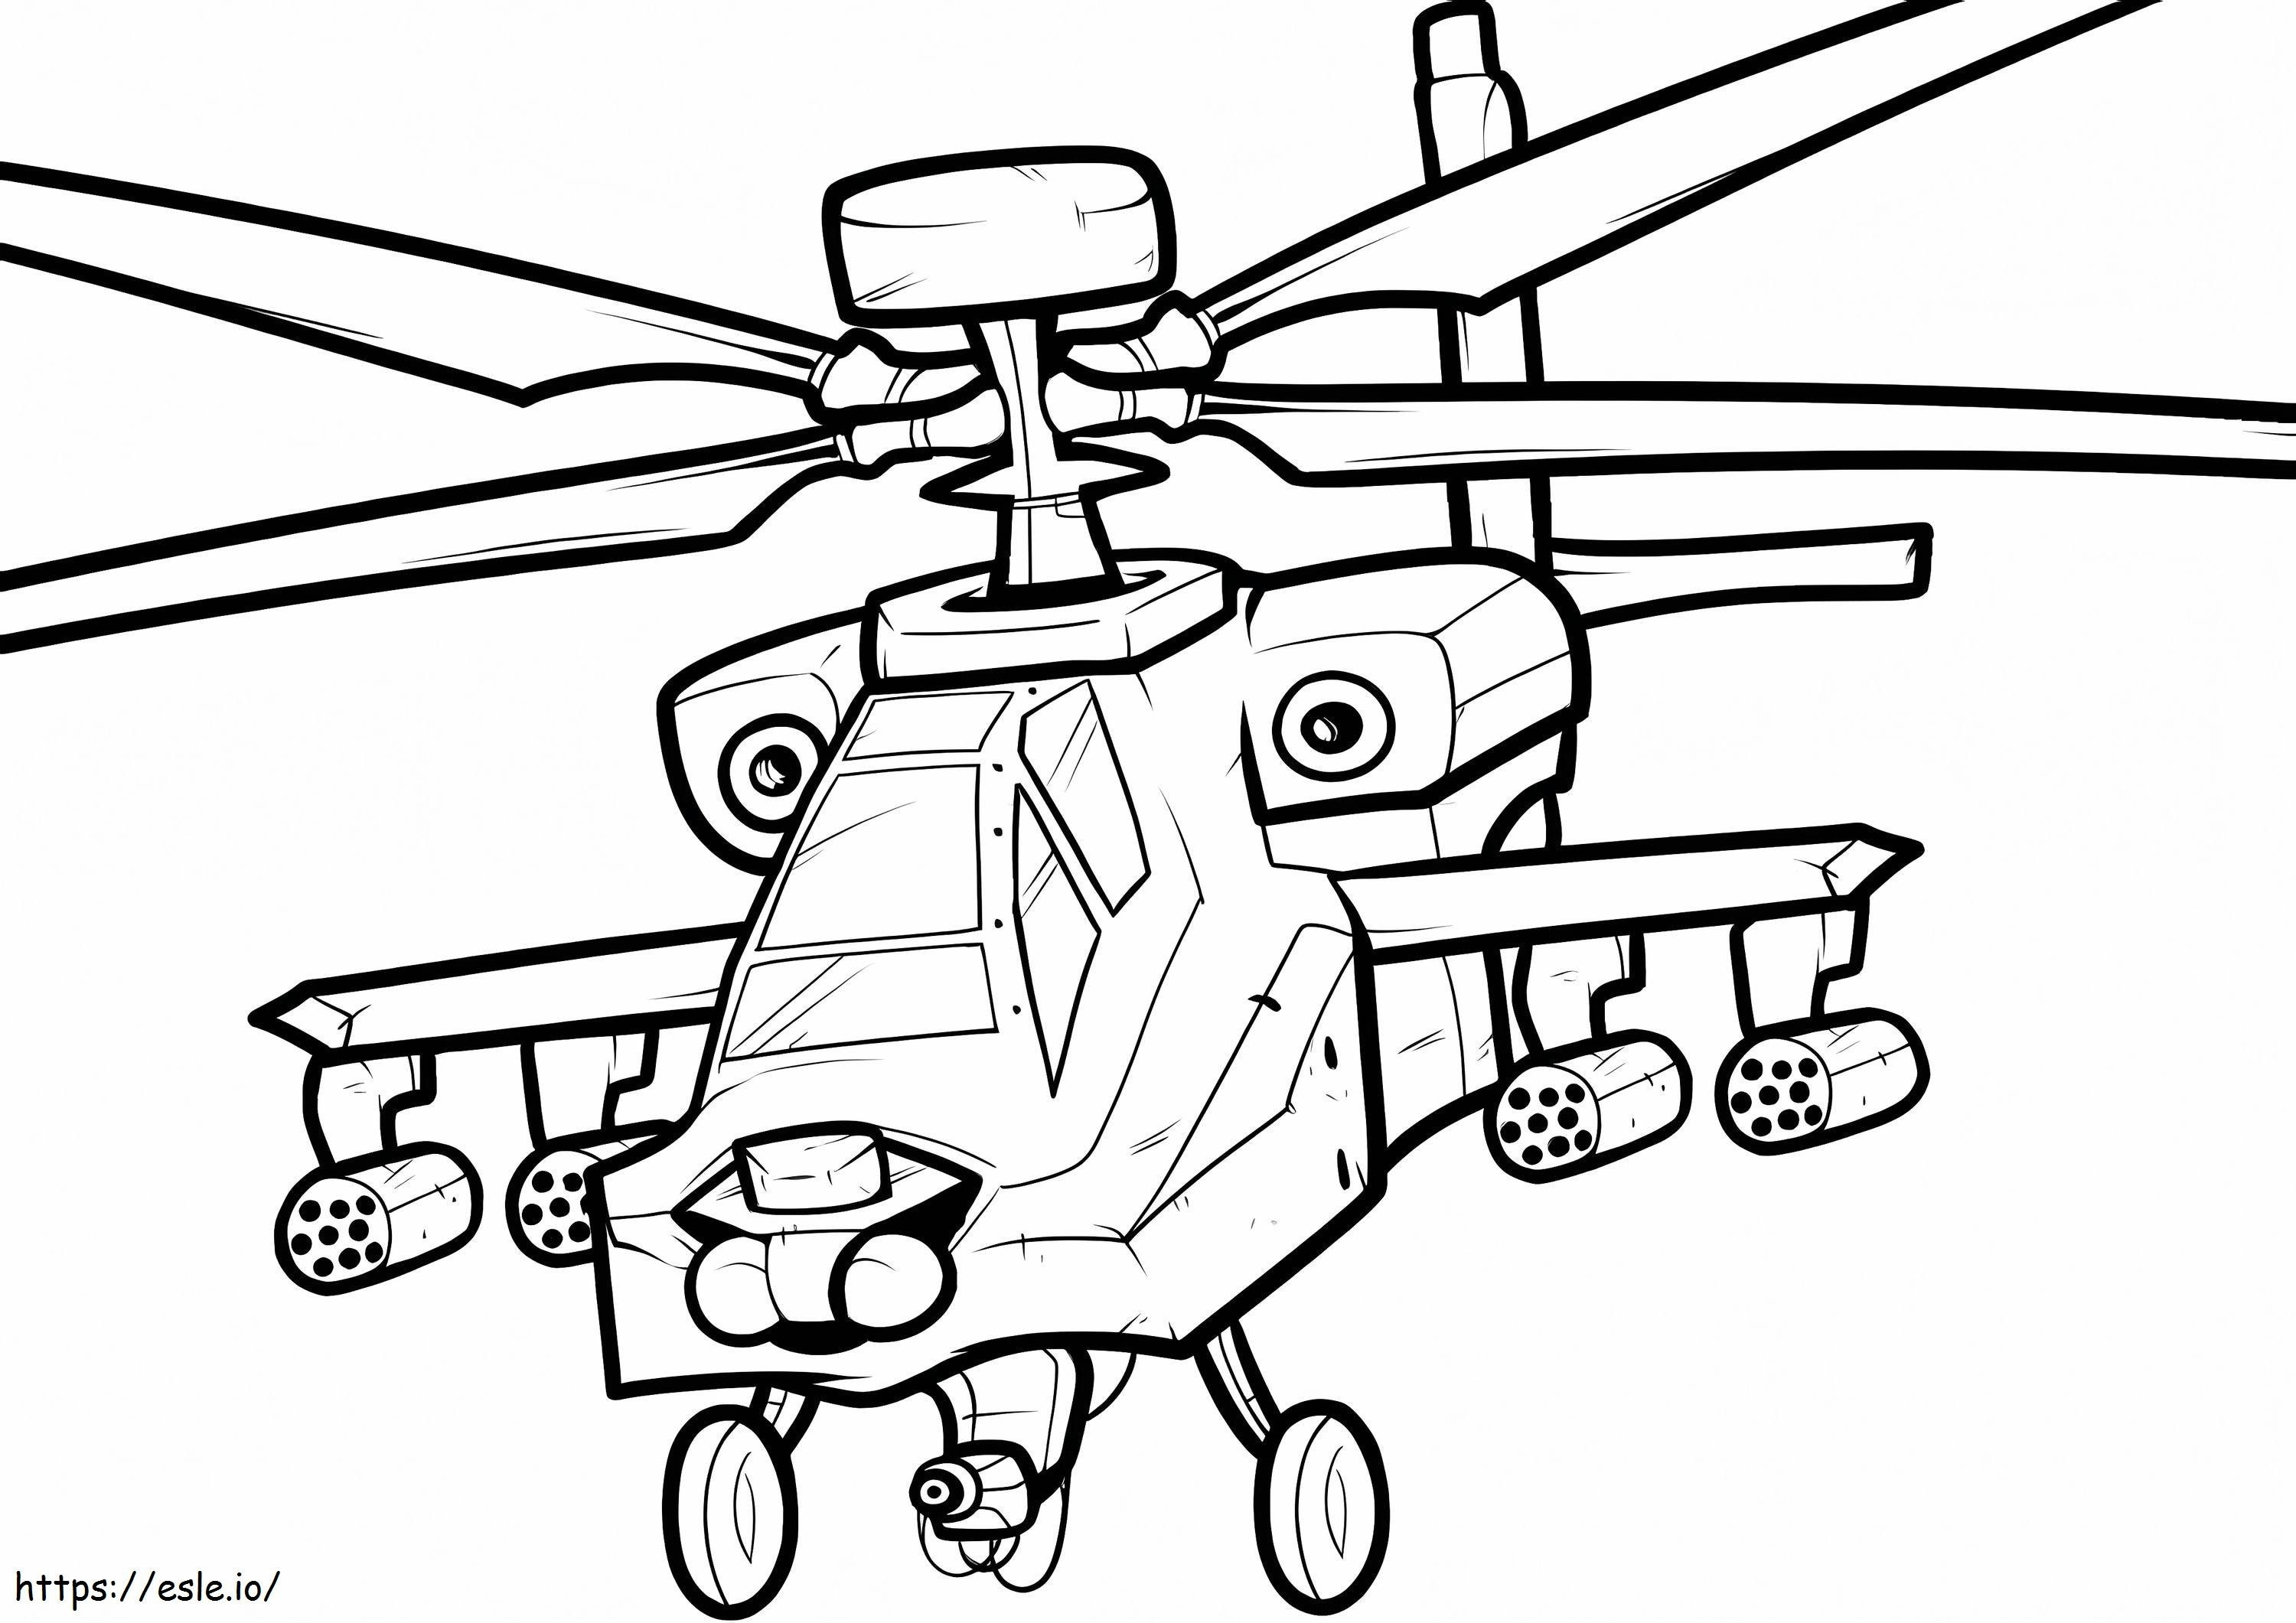 Savaş Helikopteri boyama